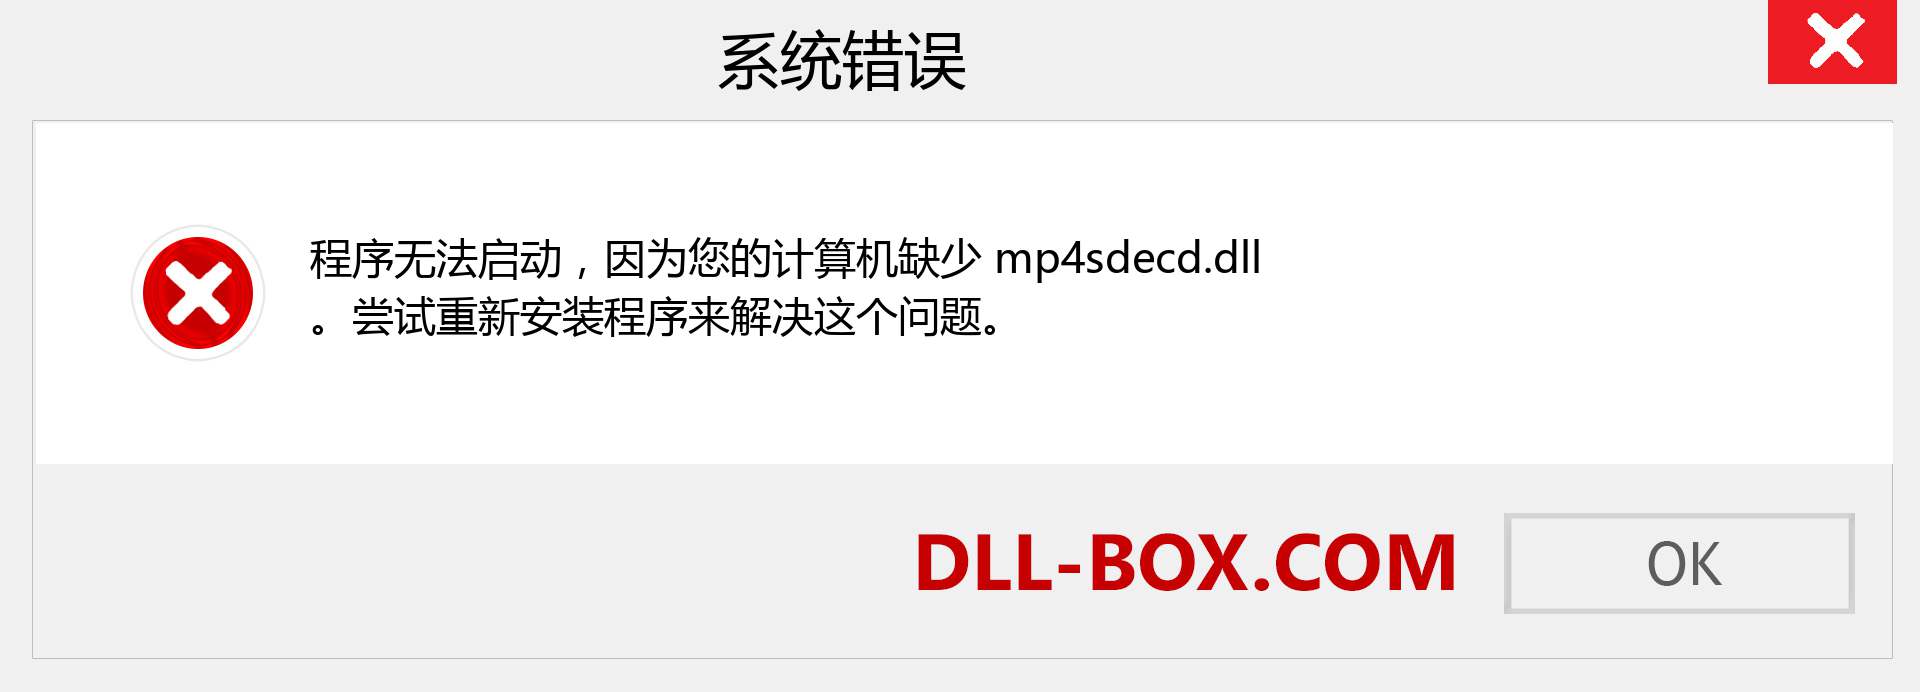 mp4sdecd.dll 文件丢失？。 适用于 Windows 7、8、10 的下载 - 修复 Windows、照片、图像上的 mp4sdecd dll 丢失错误